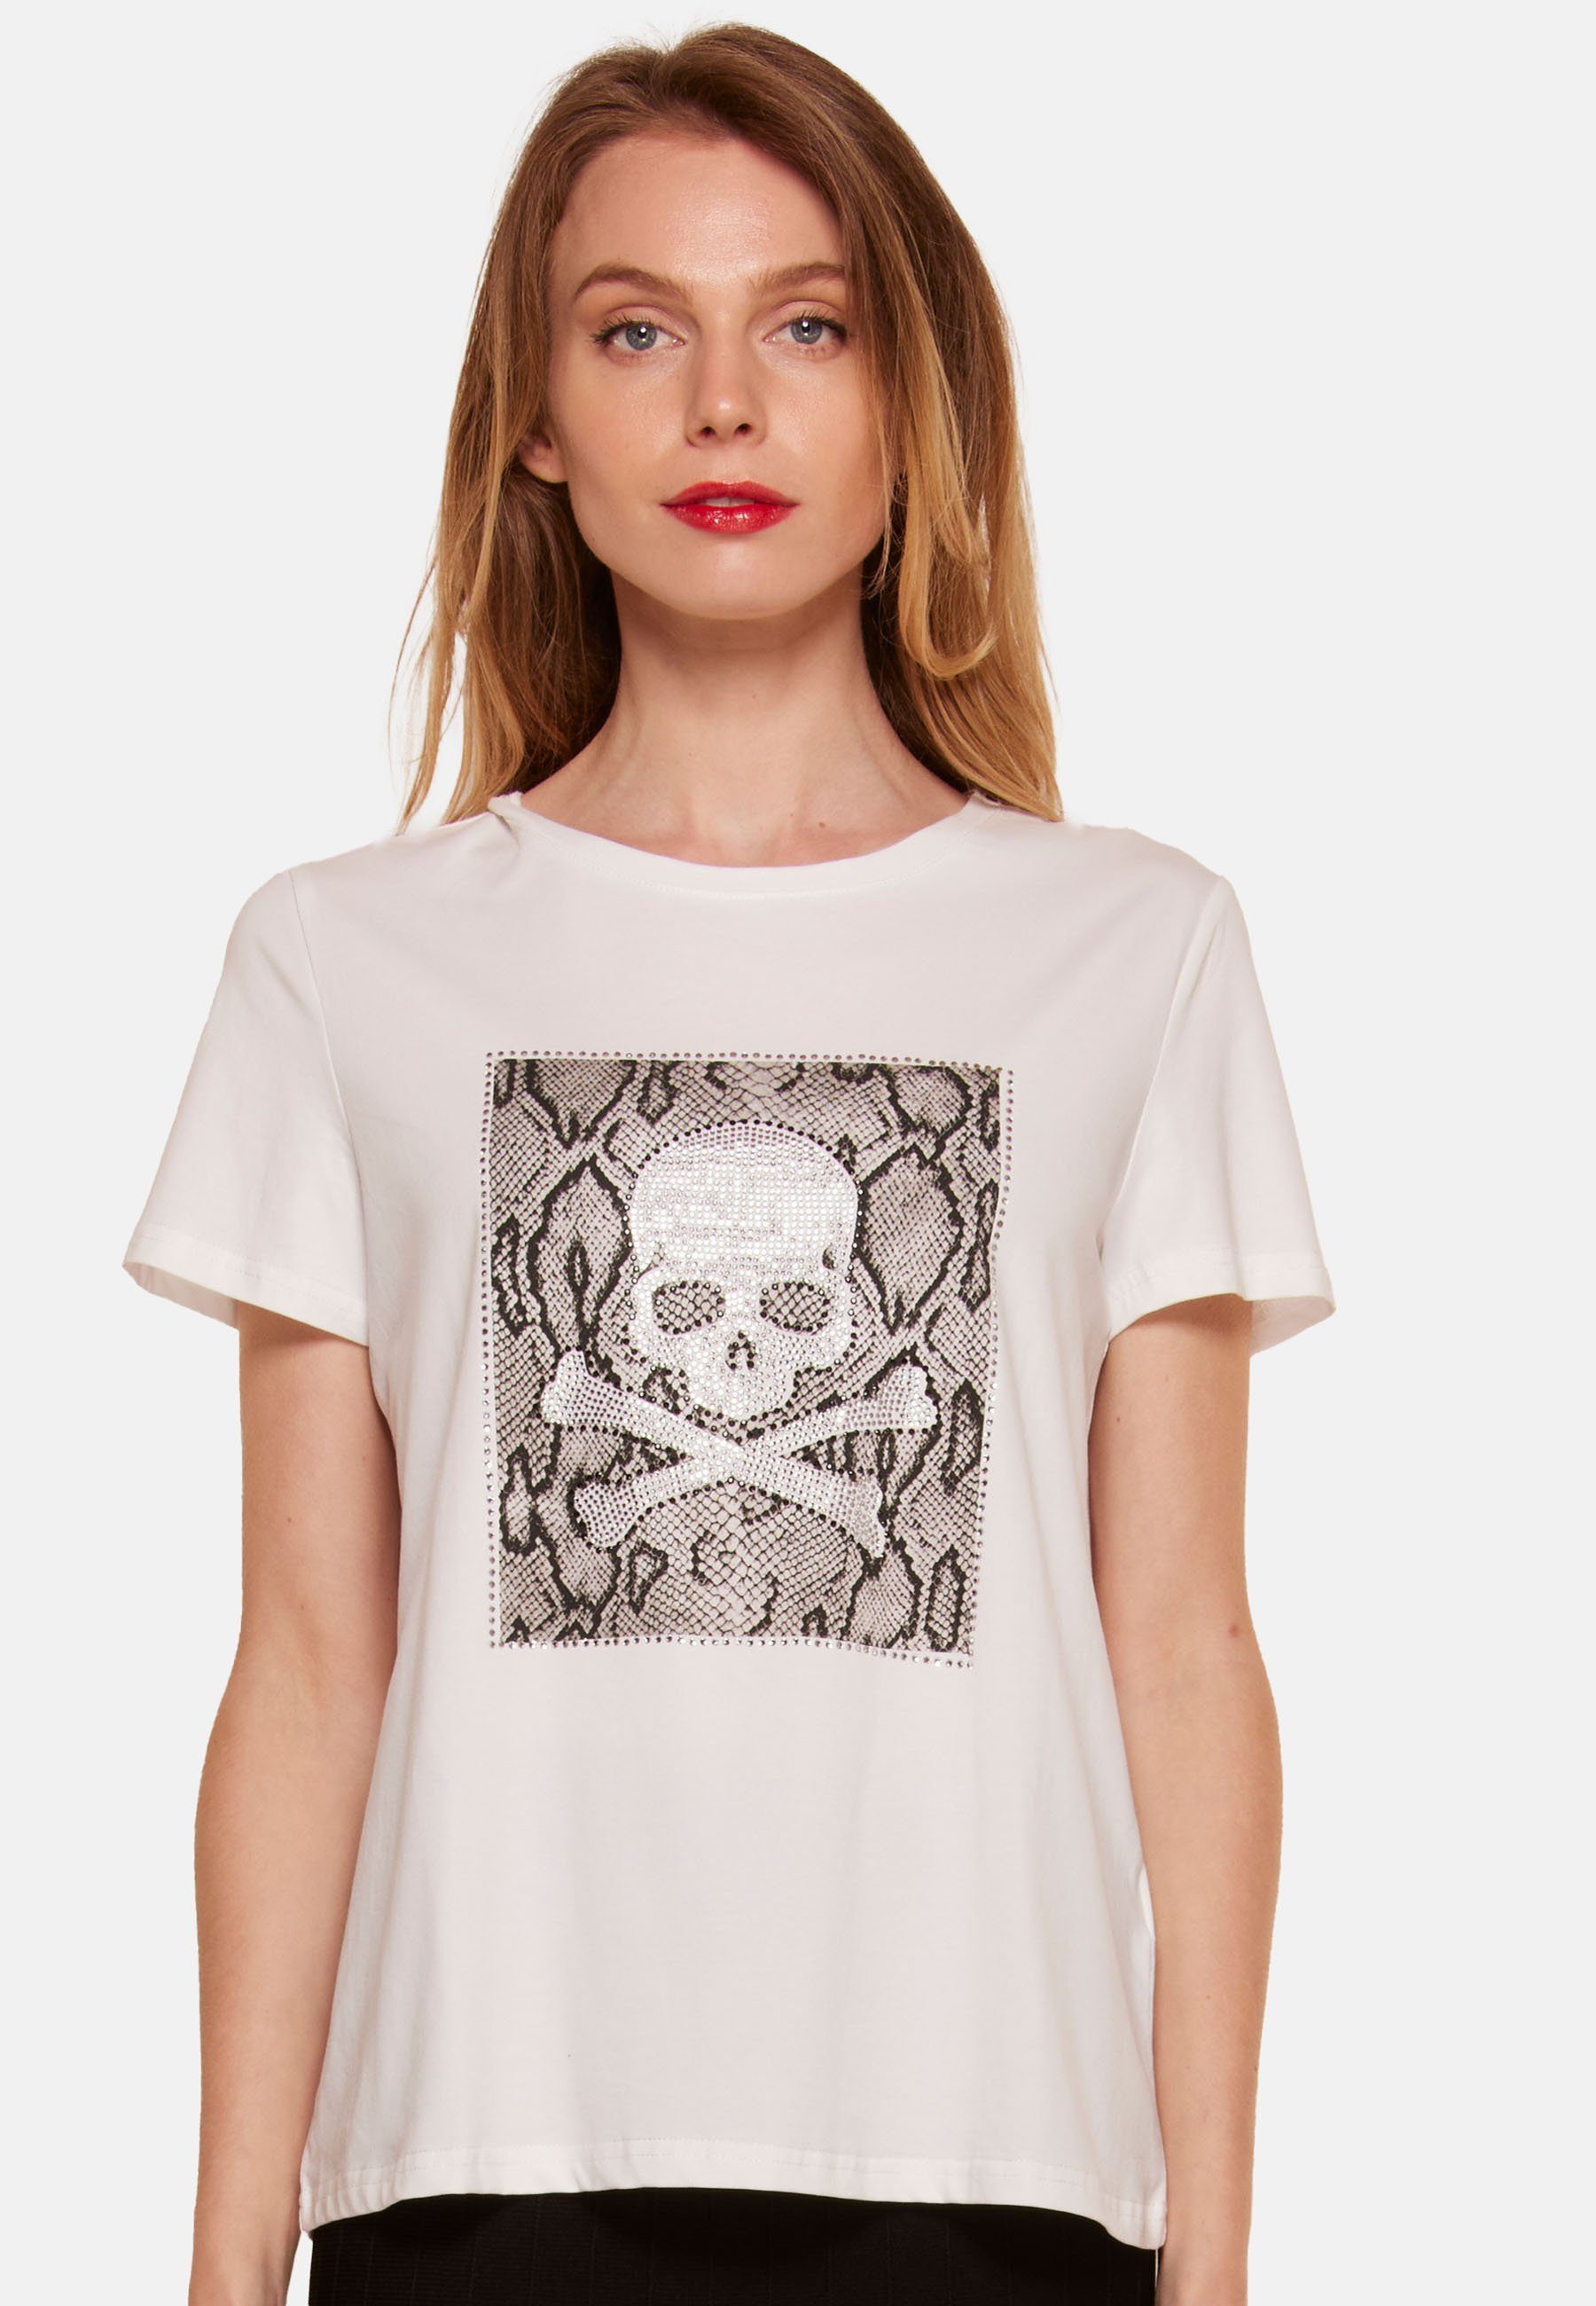 Tooche Print-Shirt Totenkopf T-shirt weiss